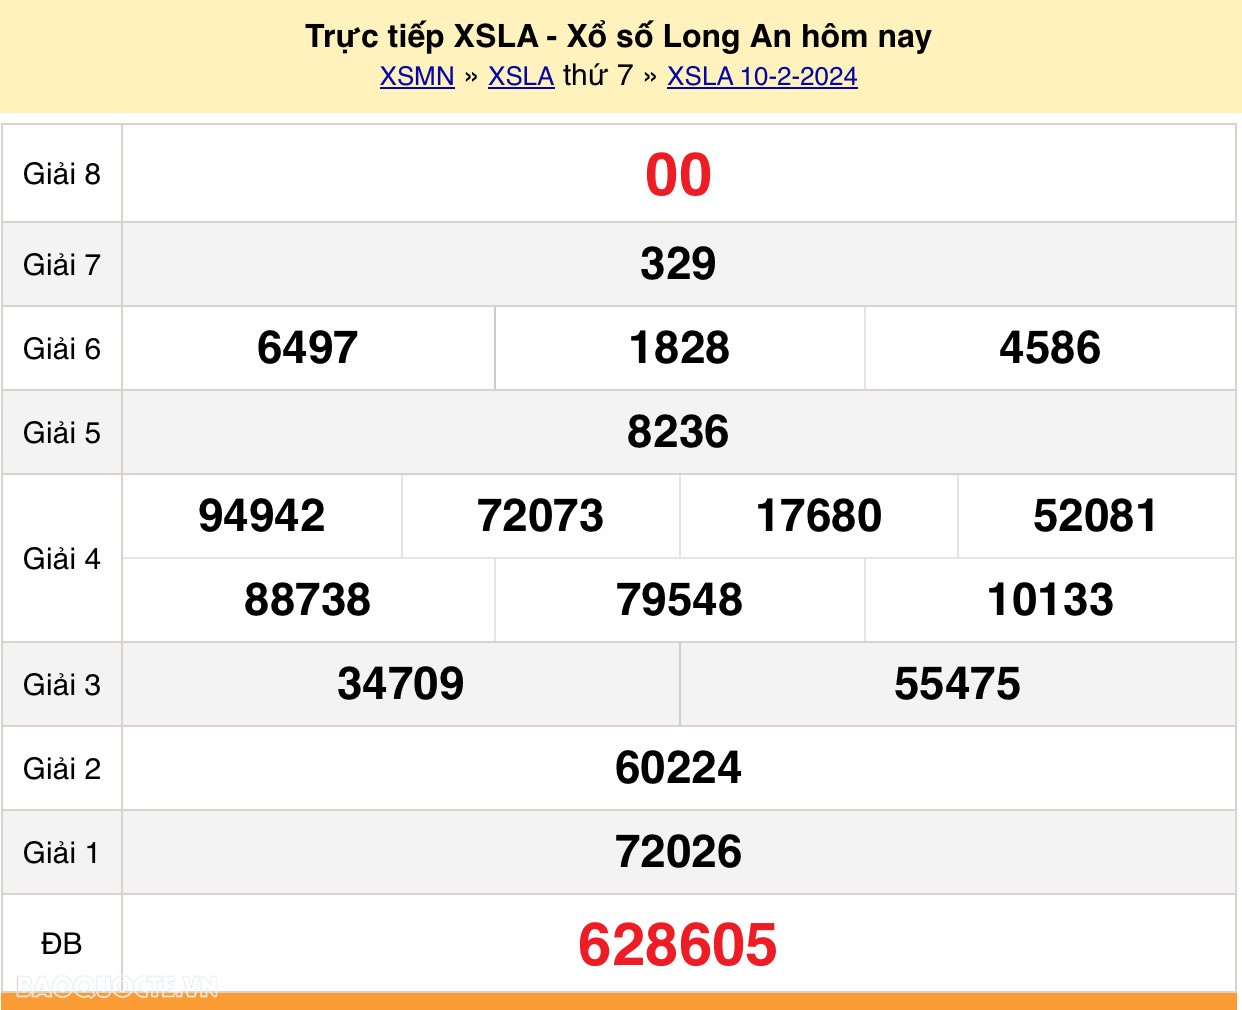 XSLA 10/2, trực tiếp kết quả xổ số Long An hôm nay 10/2/2024 - KQXSLA thứ 7